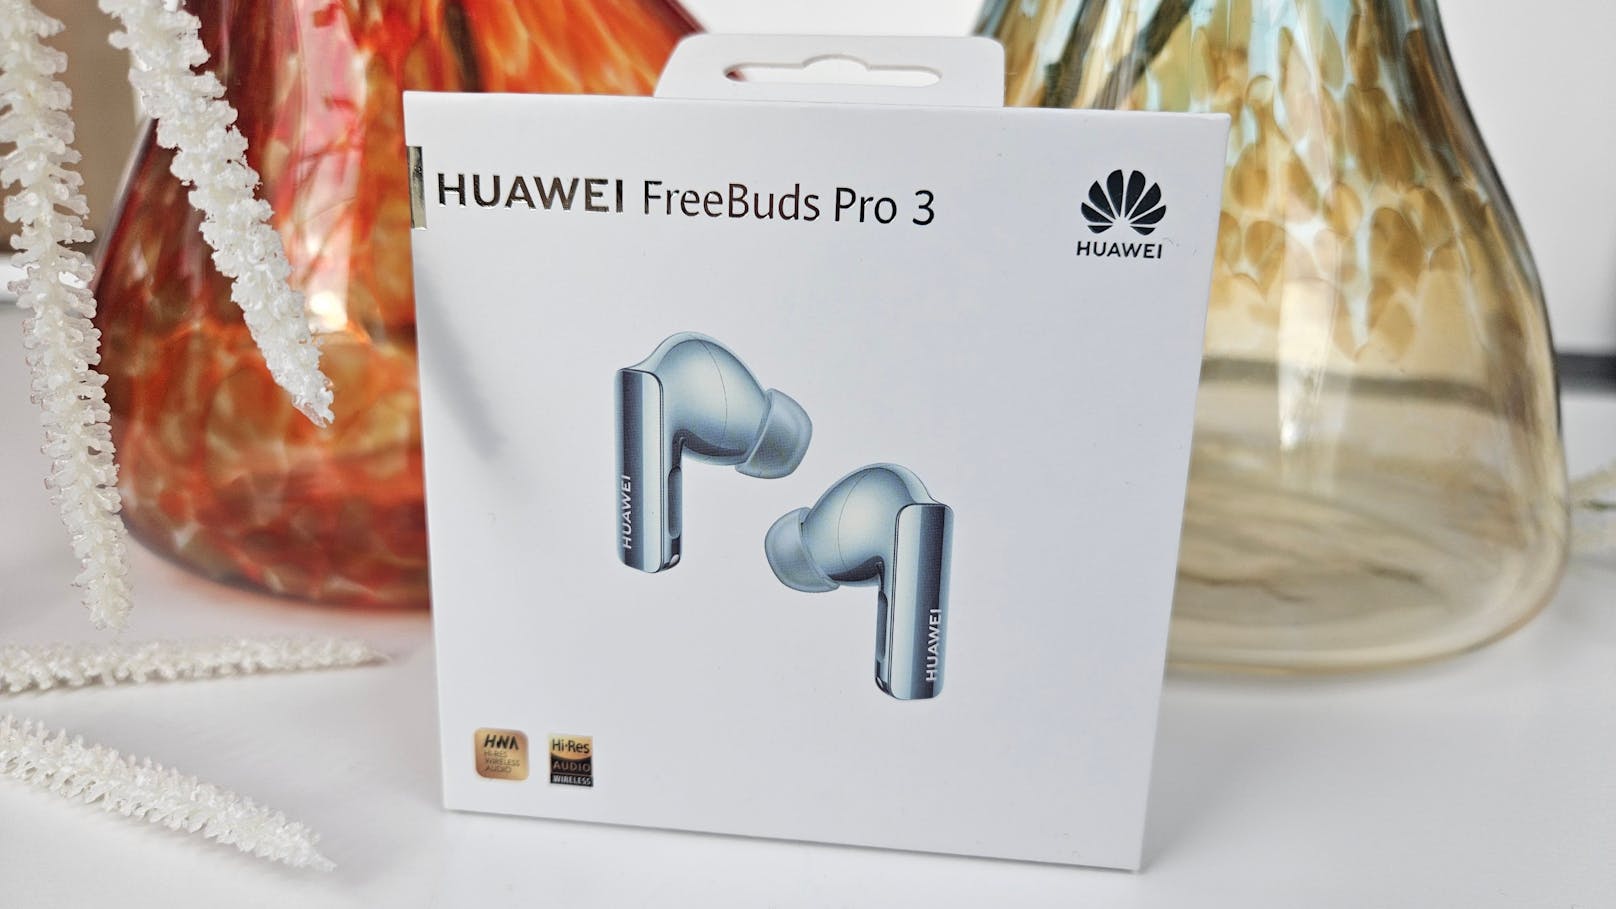 Die <a rel="nofollow" href="https://www.heute.at/t/huawei-100062937">Huawei FreeBuds</a> Pro 3 schlagen die Apple AirPods Pro 2 um Längen – provokante Aussage, aber Huawei hat seine neuen Buds zum Vorzeige-Kopfhörer gemacht. 